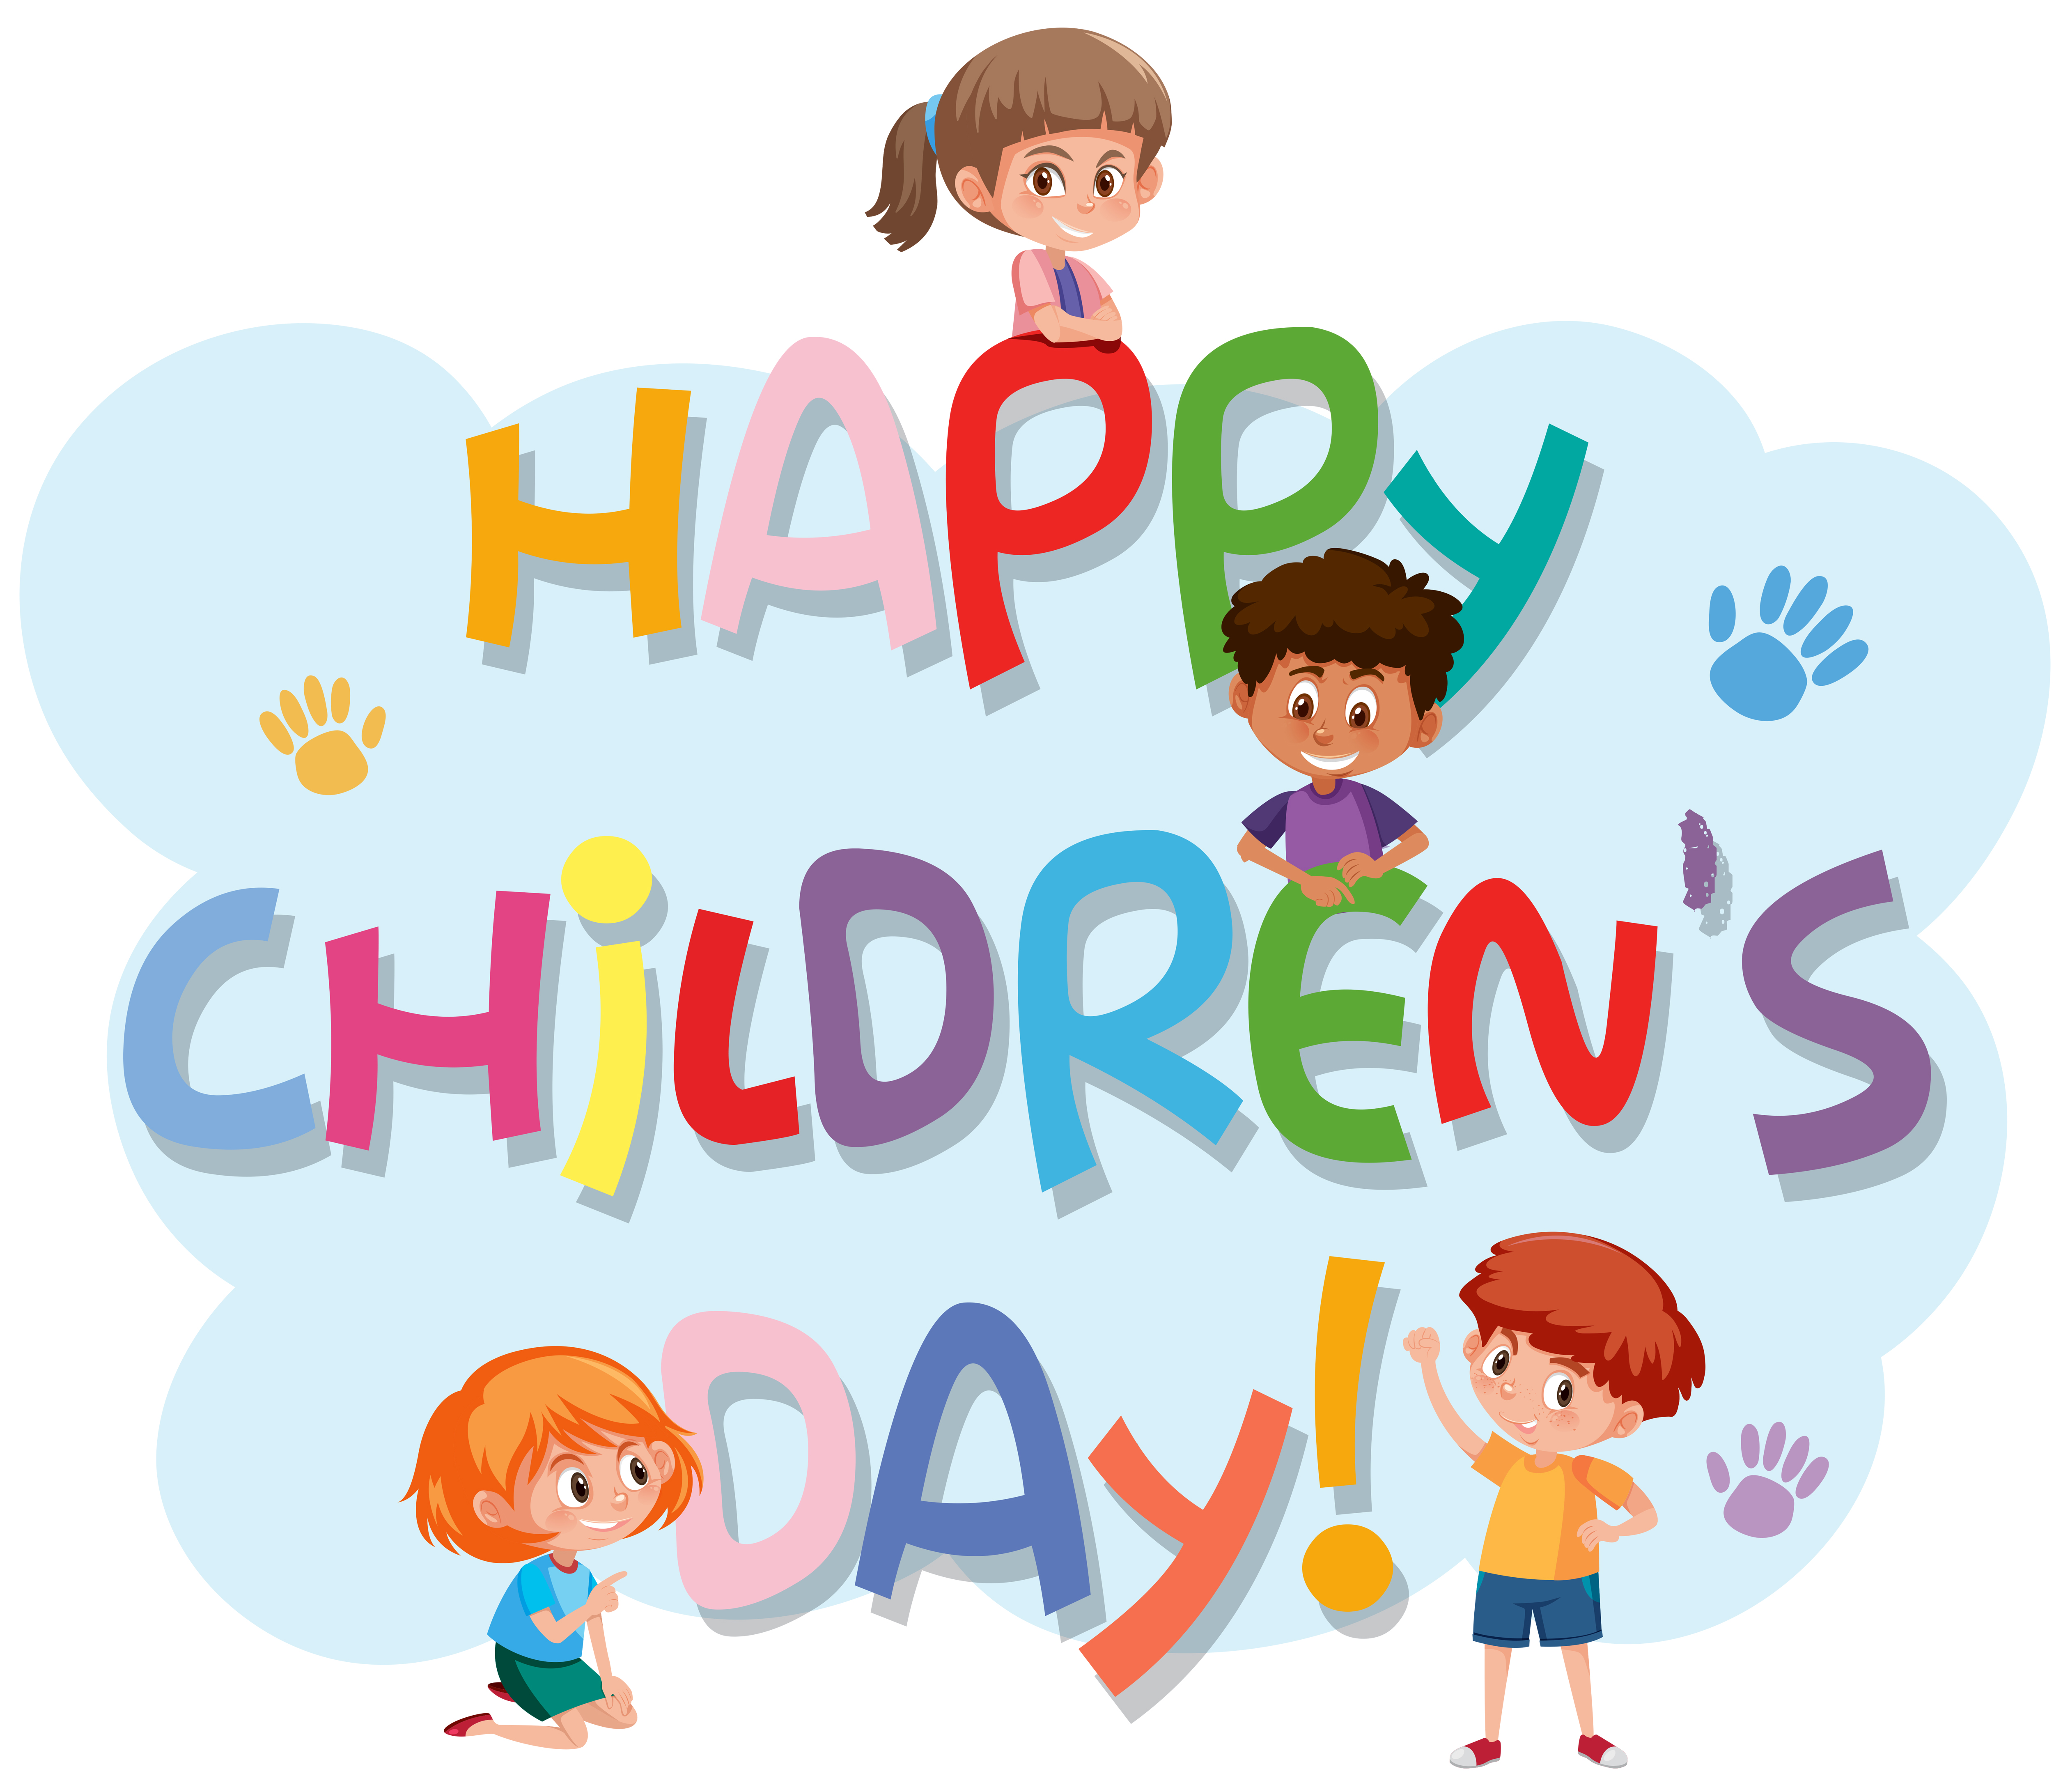 Happy children's day logo 589281 Vector Art at Vecteezy